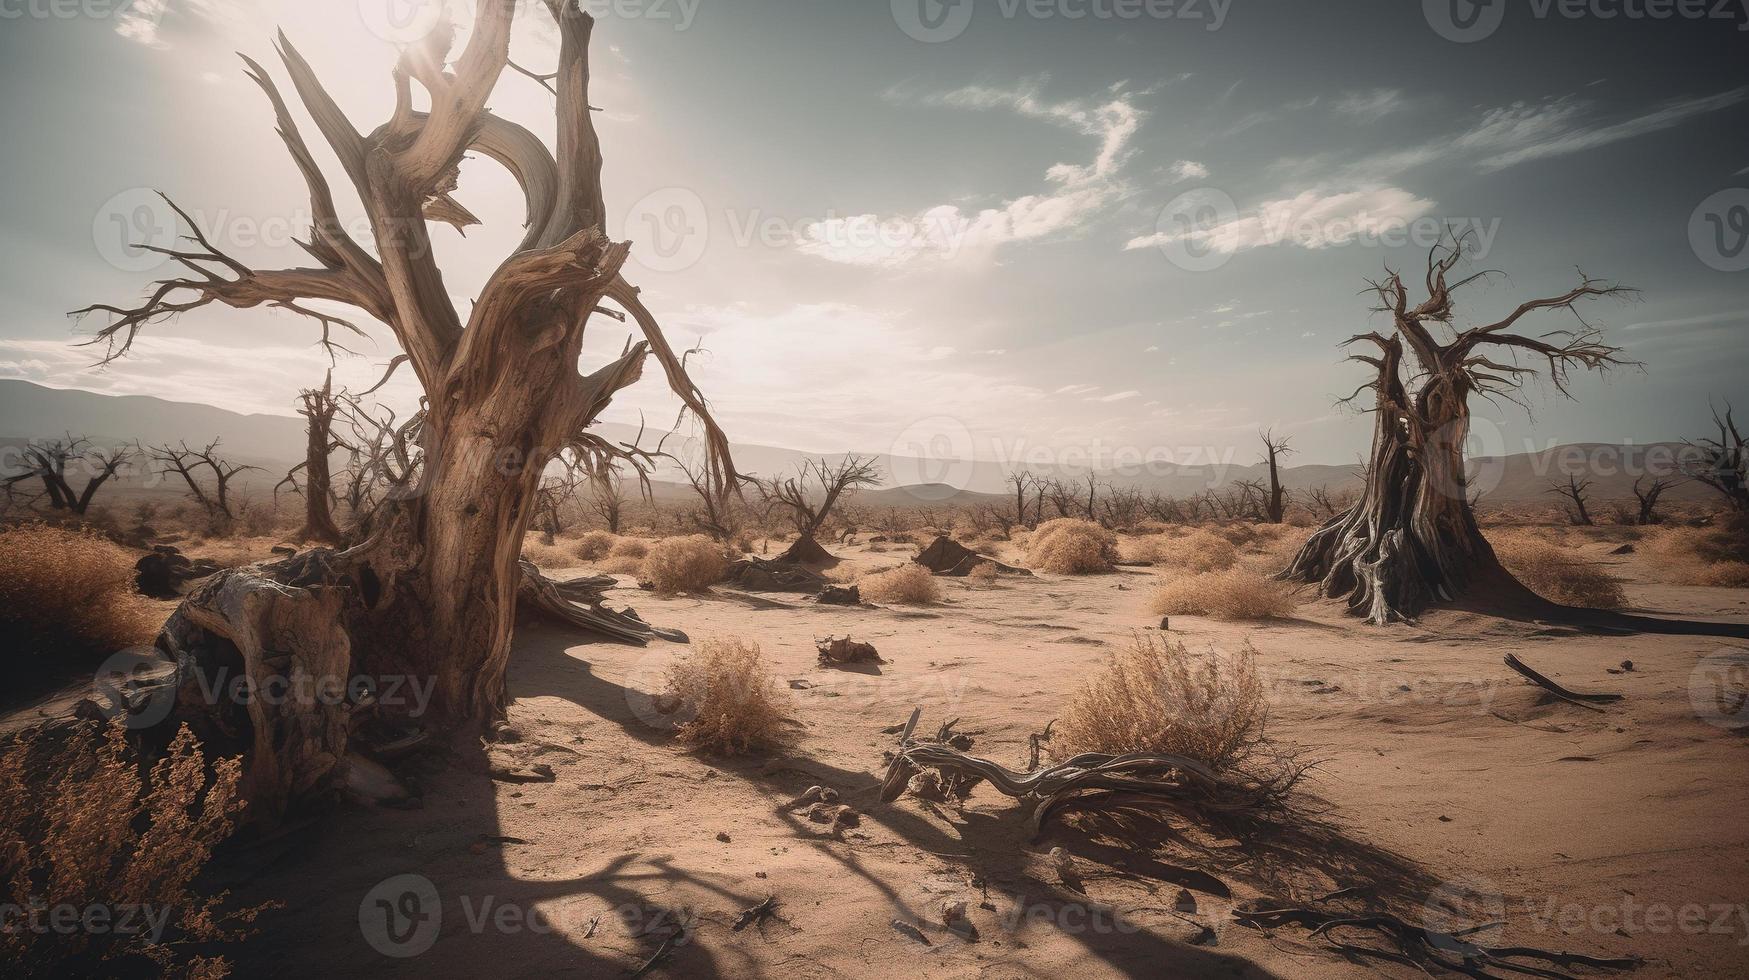 mort des arbres dans le namib désert, namibie, Afrique photo